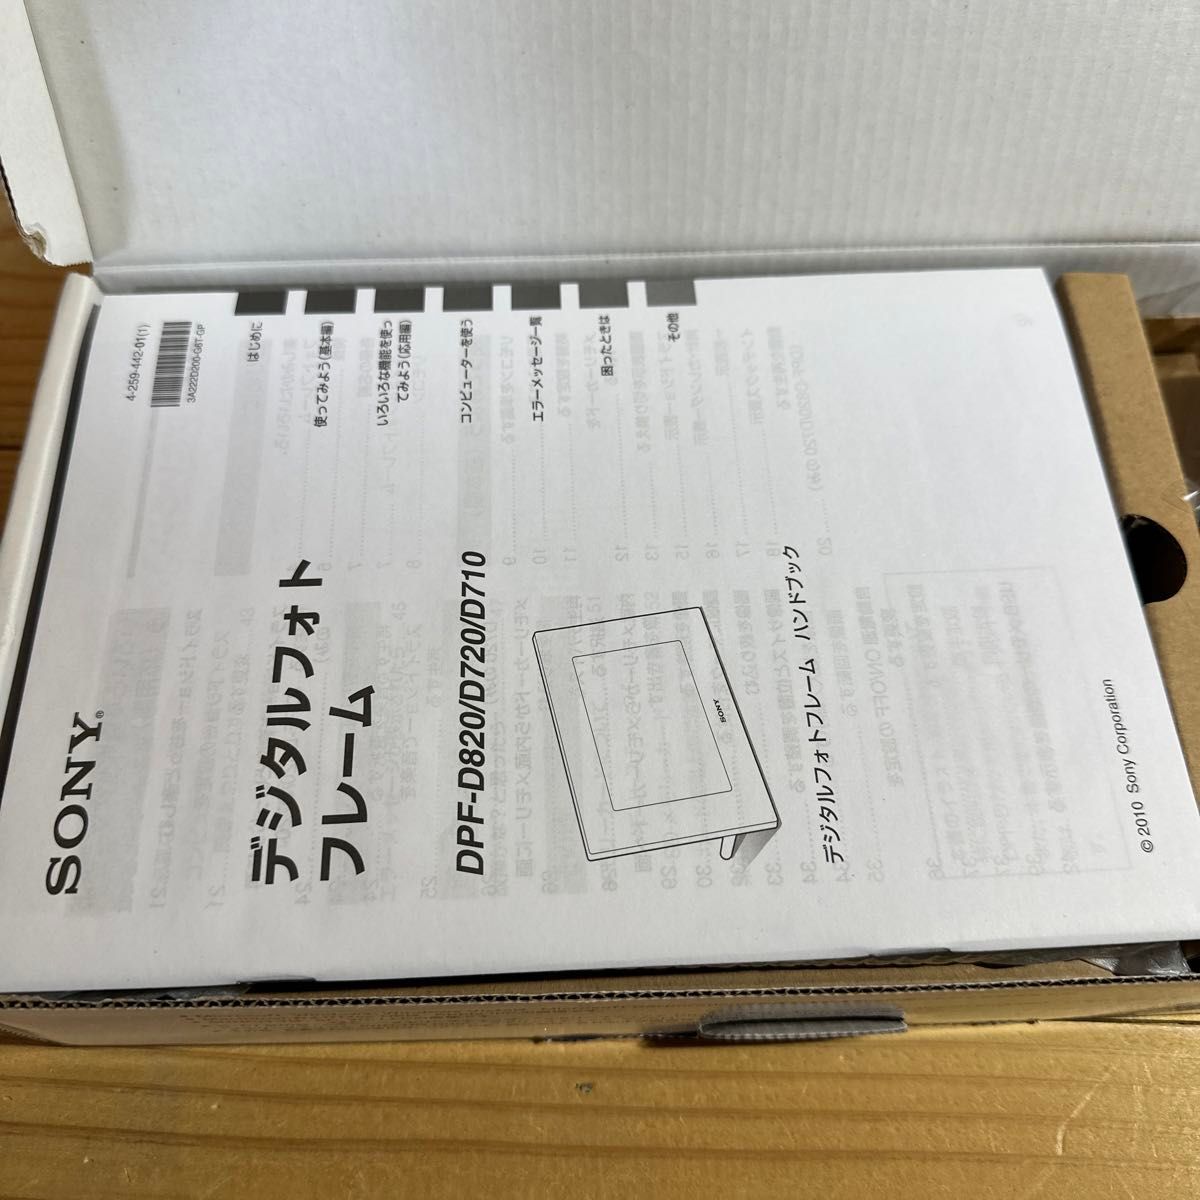 ☆ ソニー SONY デジタルフォトフレーム S-Frame D720 7.0型 内蔵メモリー2GB ブラック DPF-D720☆